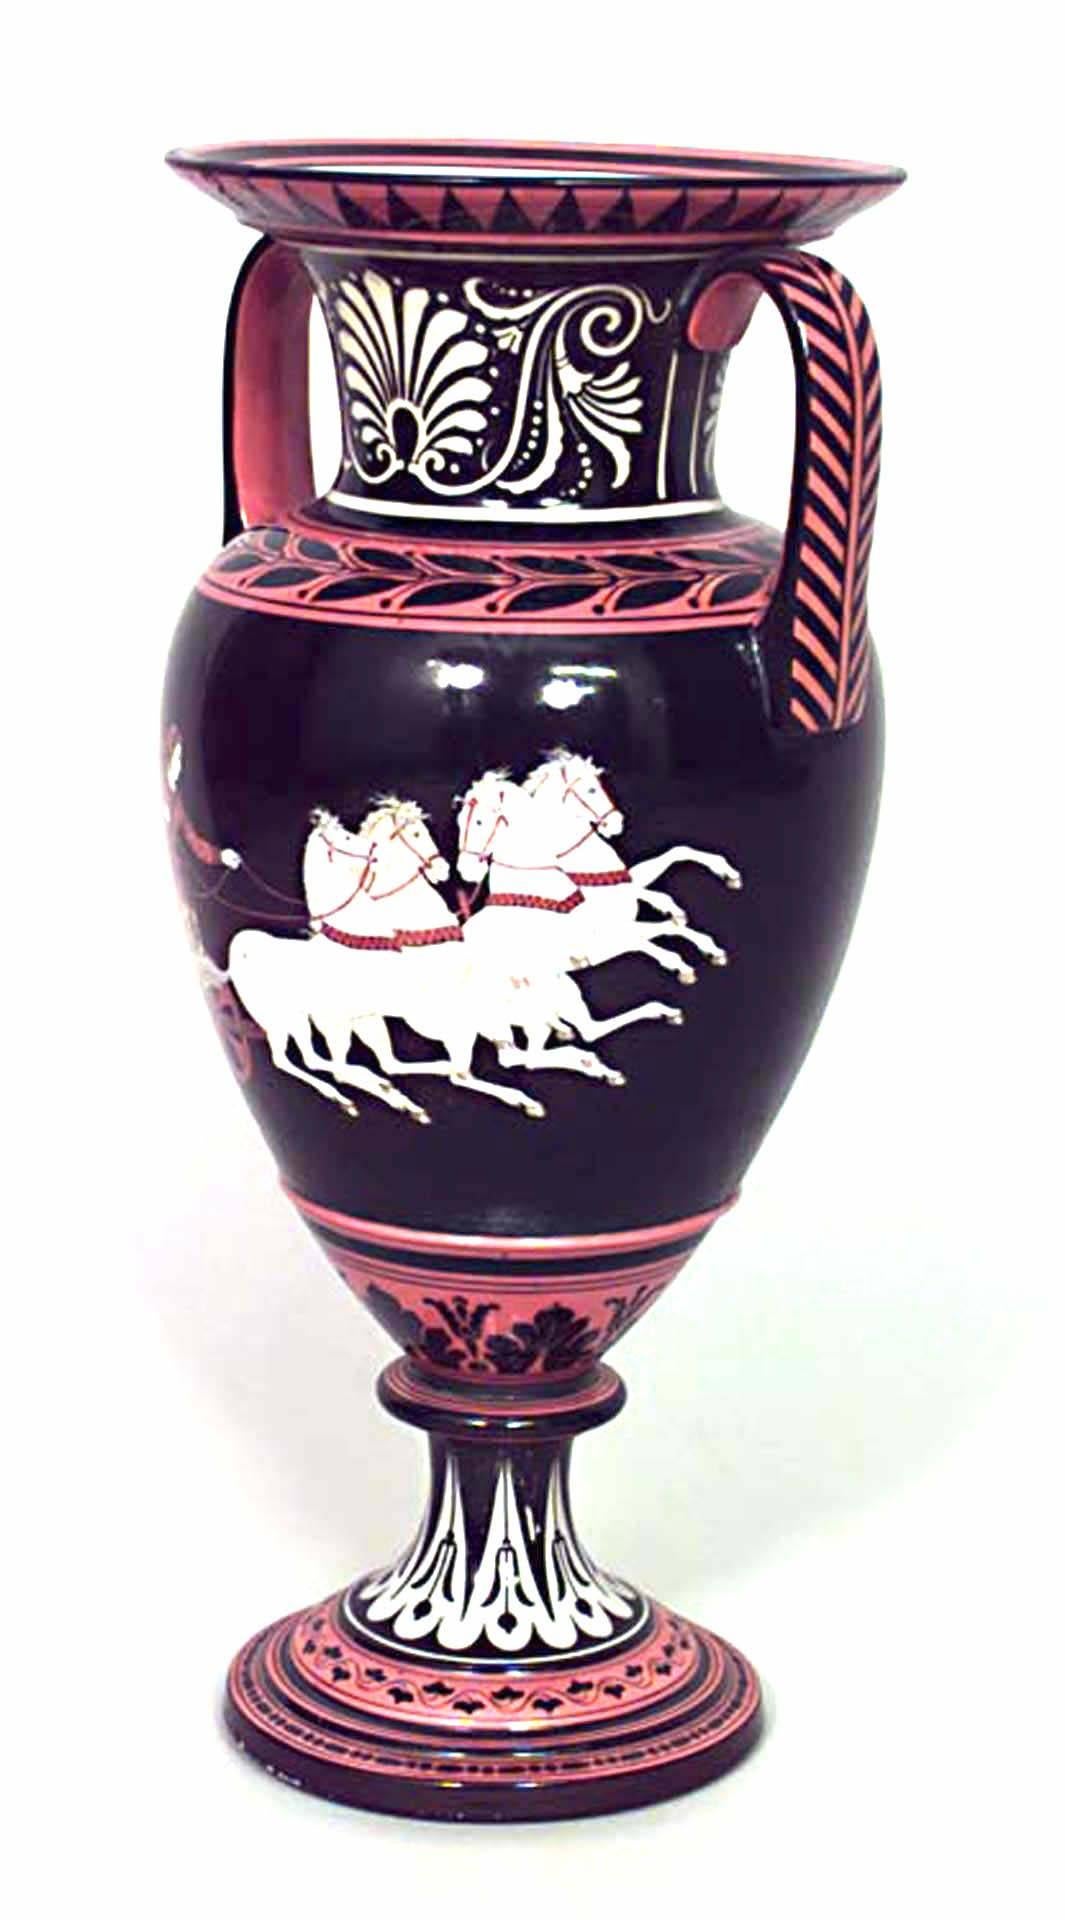 Paire de vases de style grec (19e siècle) en porcelaine noire et orange avec poignées et scène de char. (PRIX PAR Paire)
